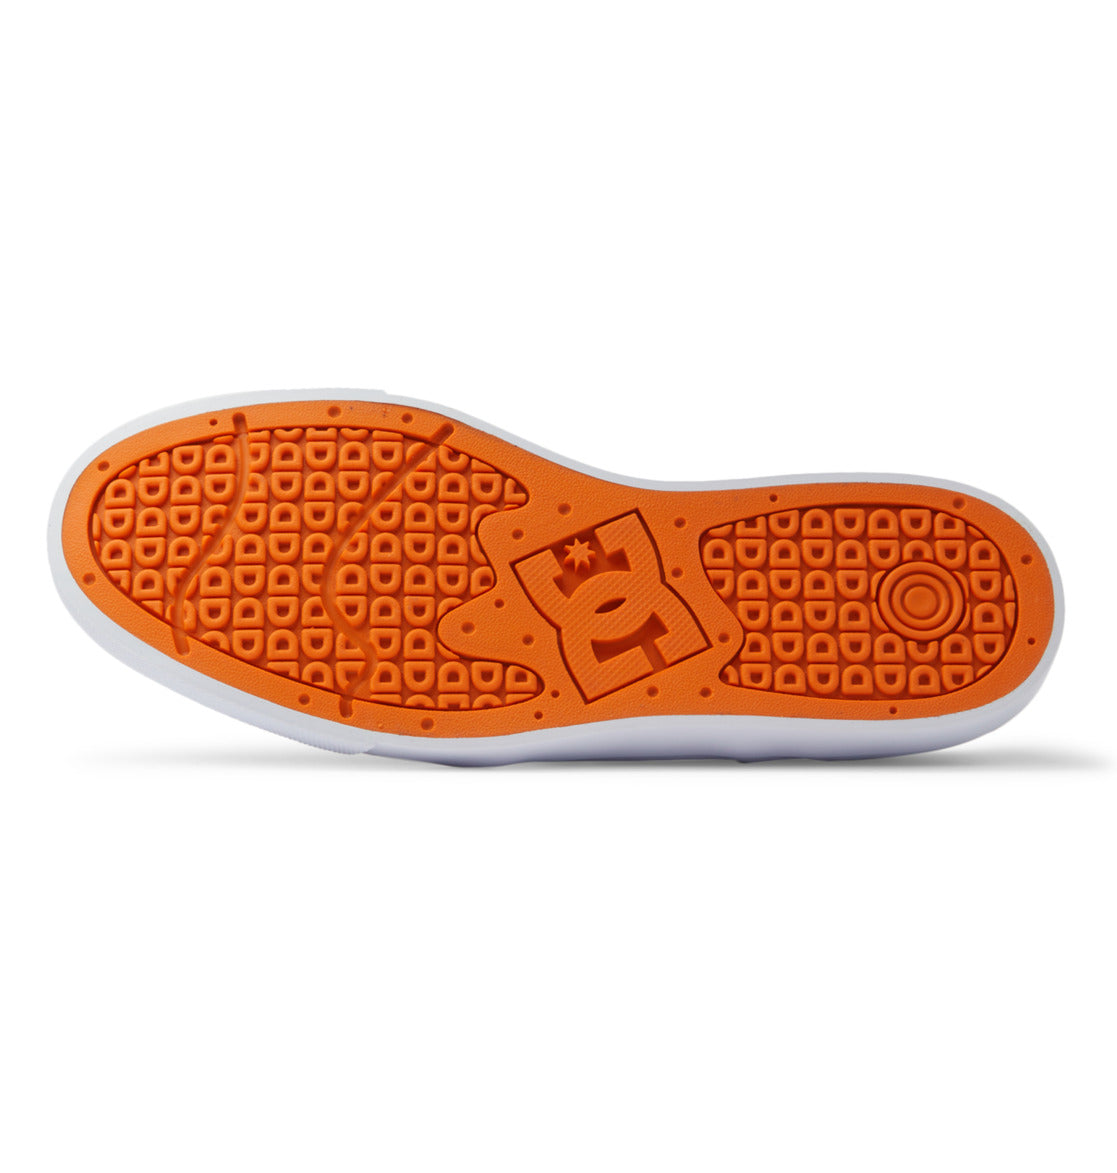 Chaussure de skate Dc Shoes Teknic - Camo Olive | Nouveaux produits | Produits les plus récents | Produits les plus vendus | surfdevils.com